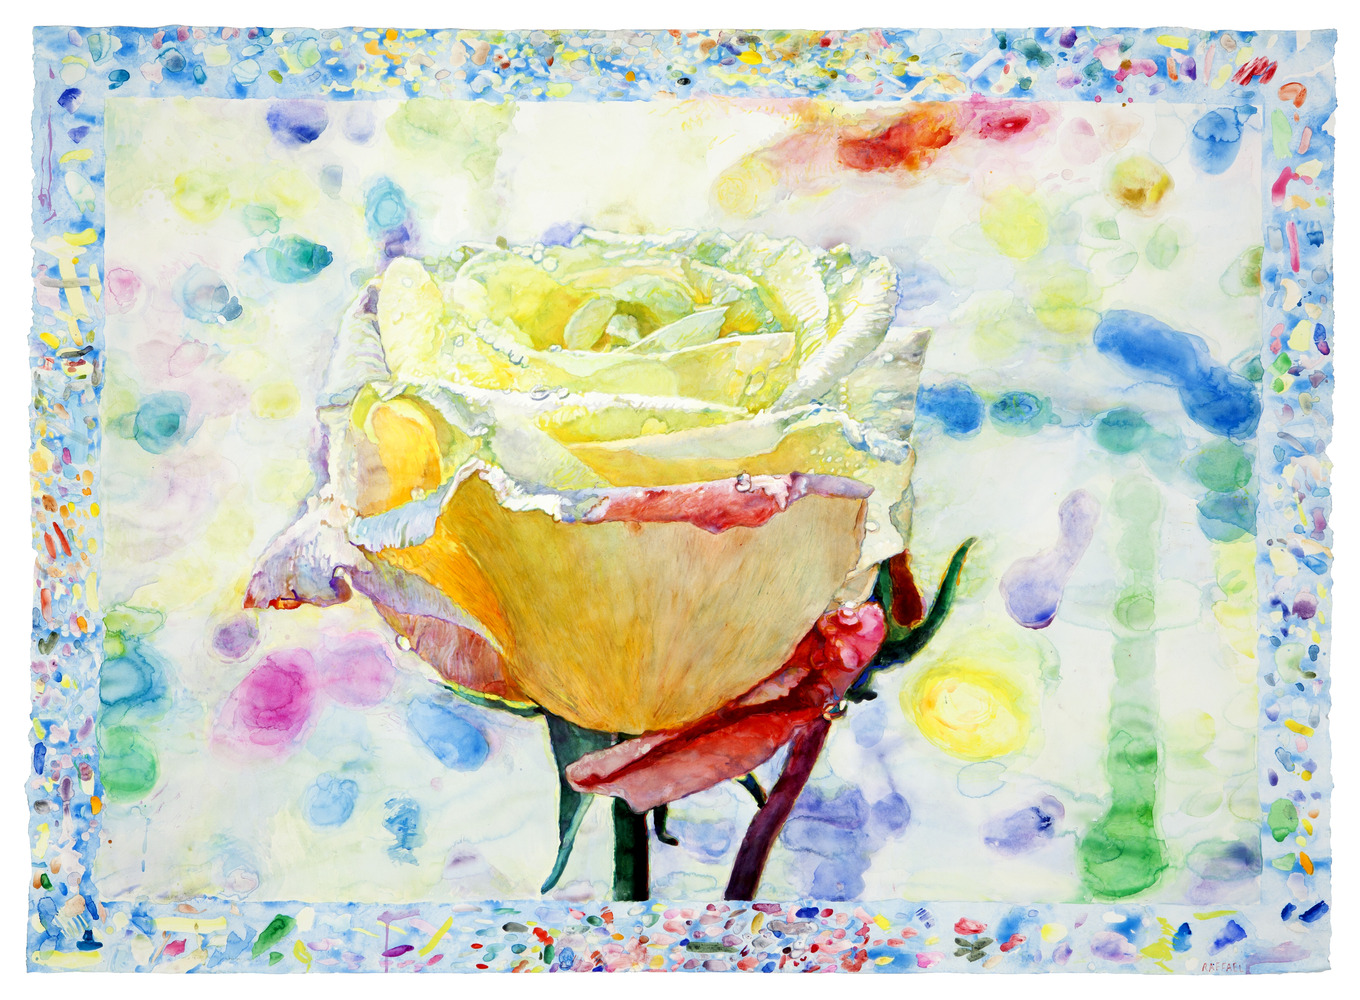 La Rose d'Ariane - acquerello su carta by Joseph Raffael